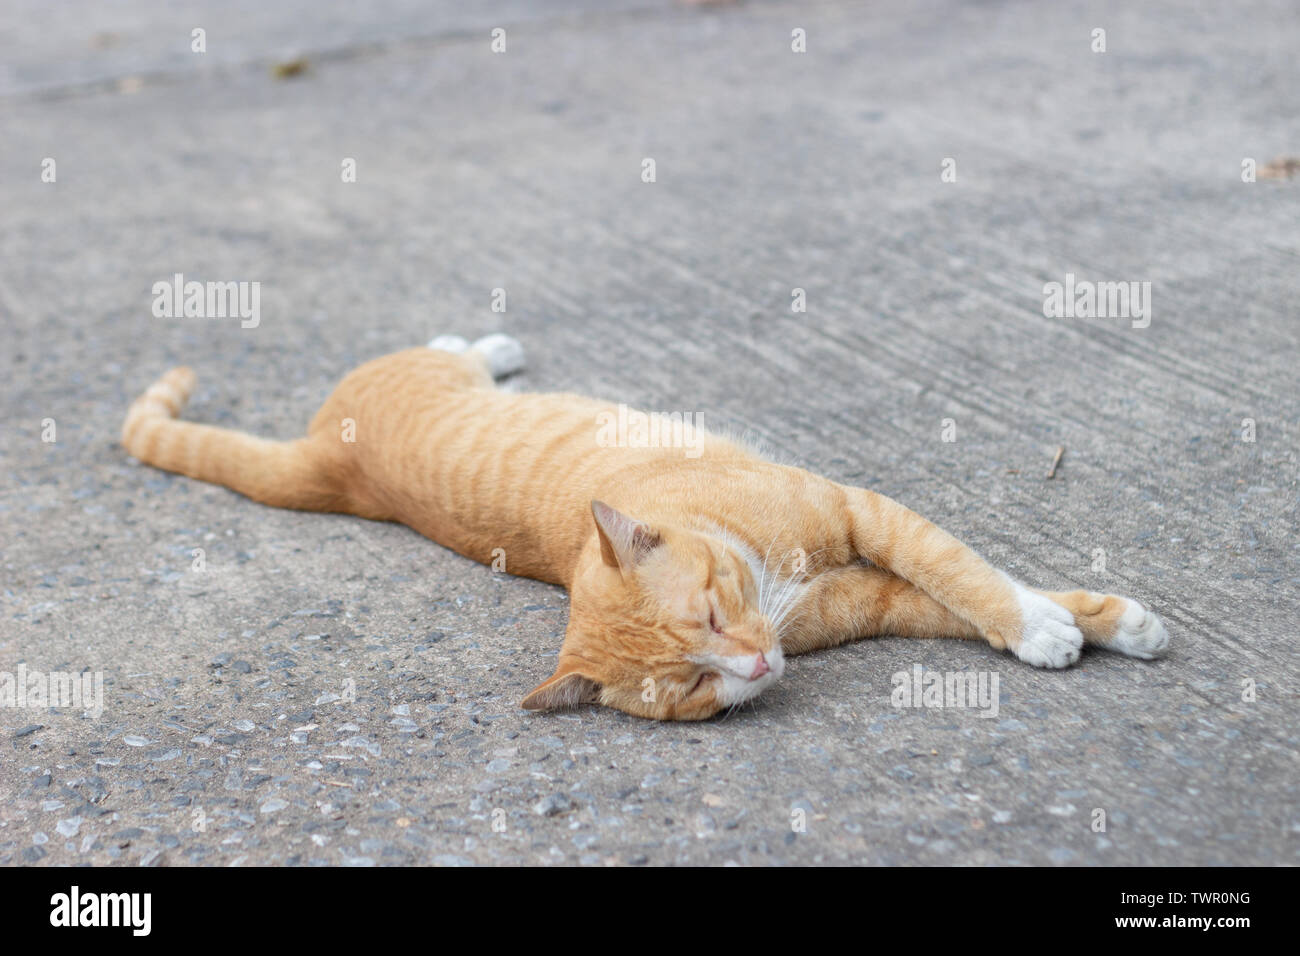 Lazy cat dormir sur rue. Concept photo animal Banque D'Images